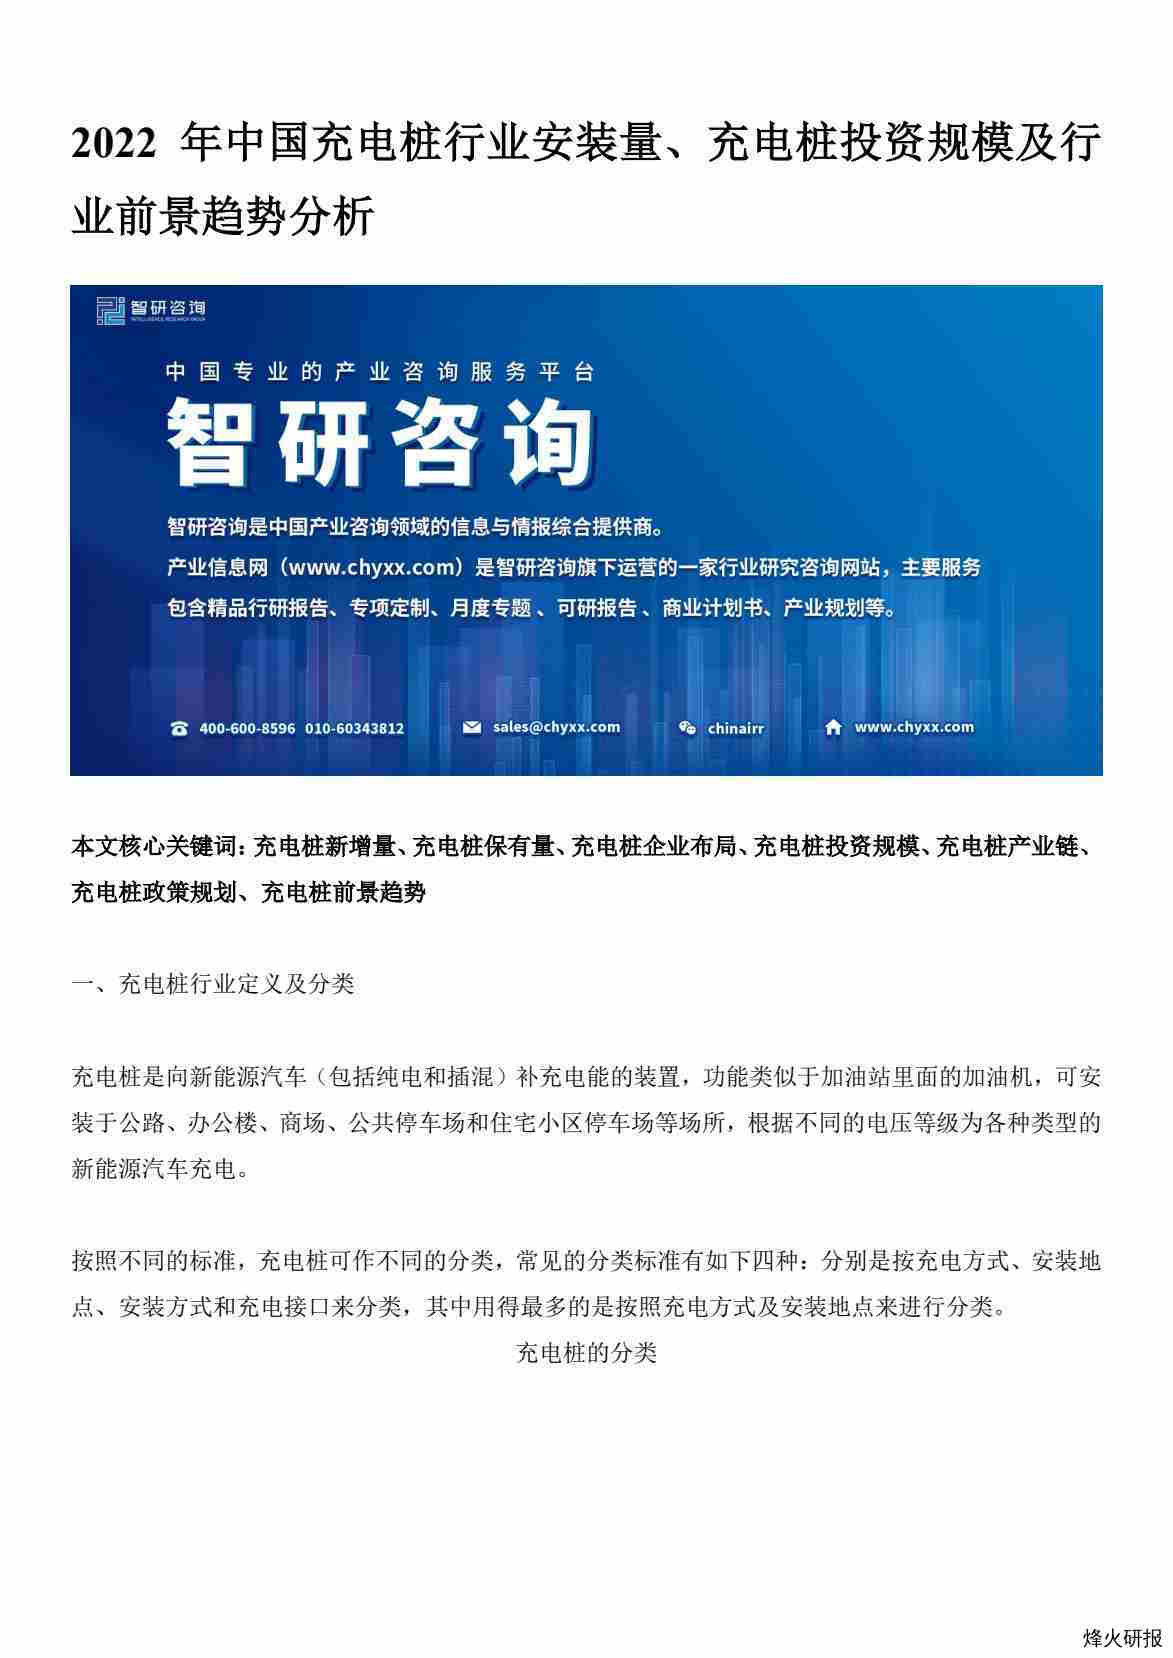 【智研咨询】2022年中国充电桩行业安装量、充电桩投资规模及行业前景趋势分析.pdf-第一页